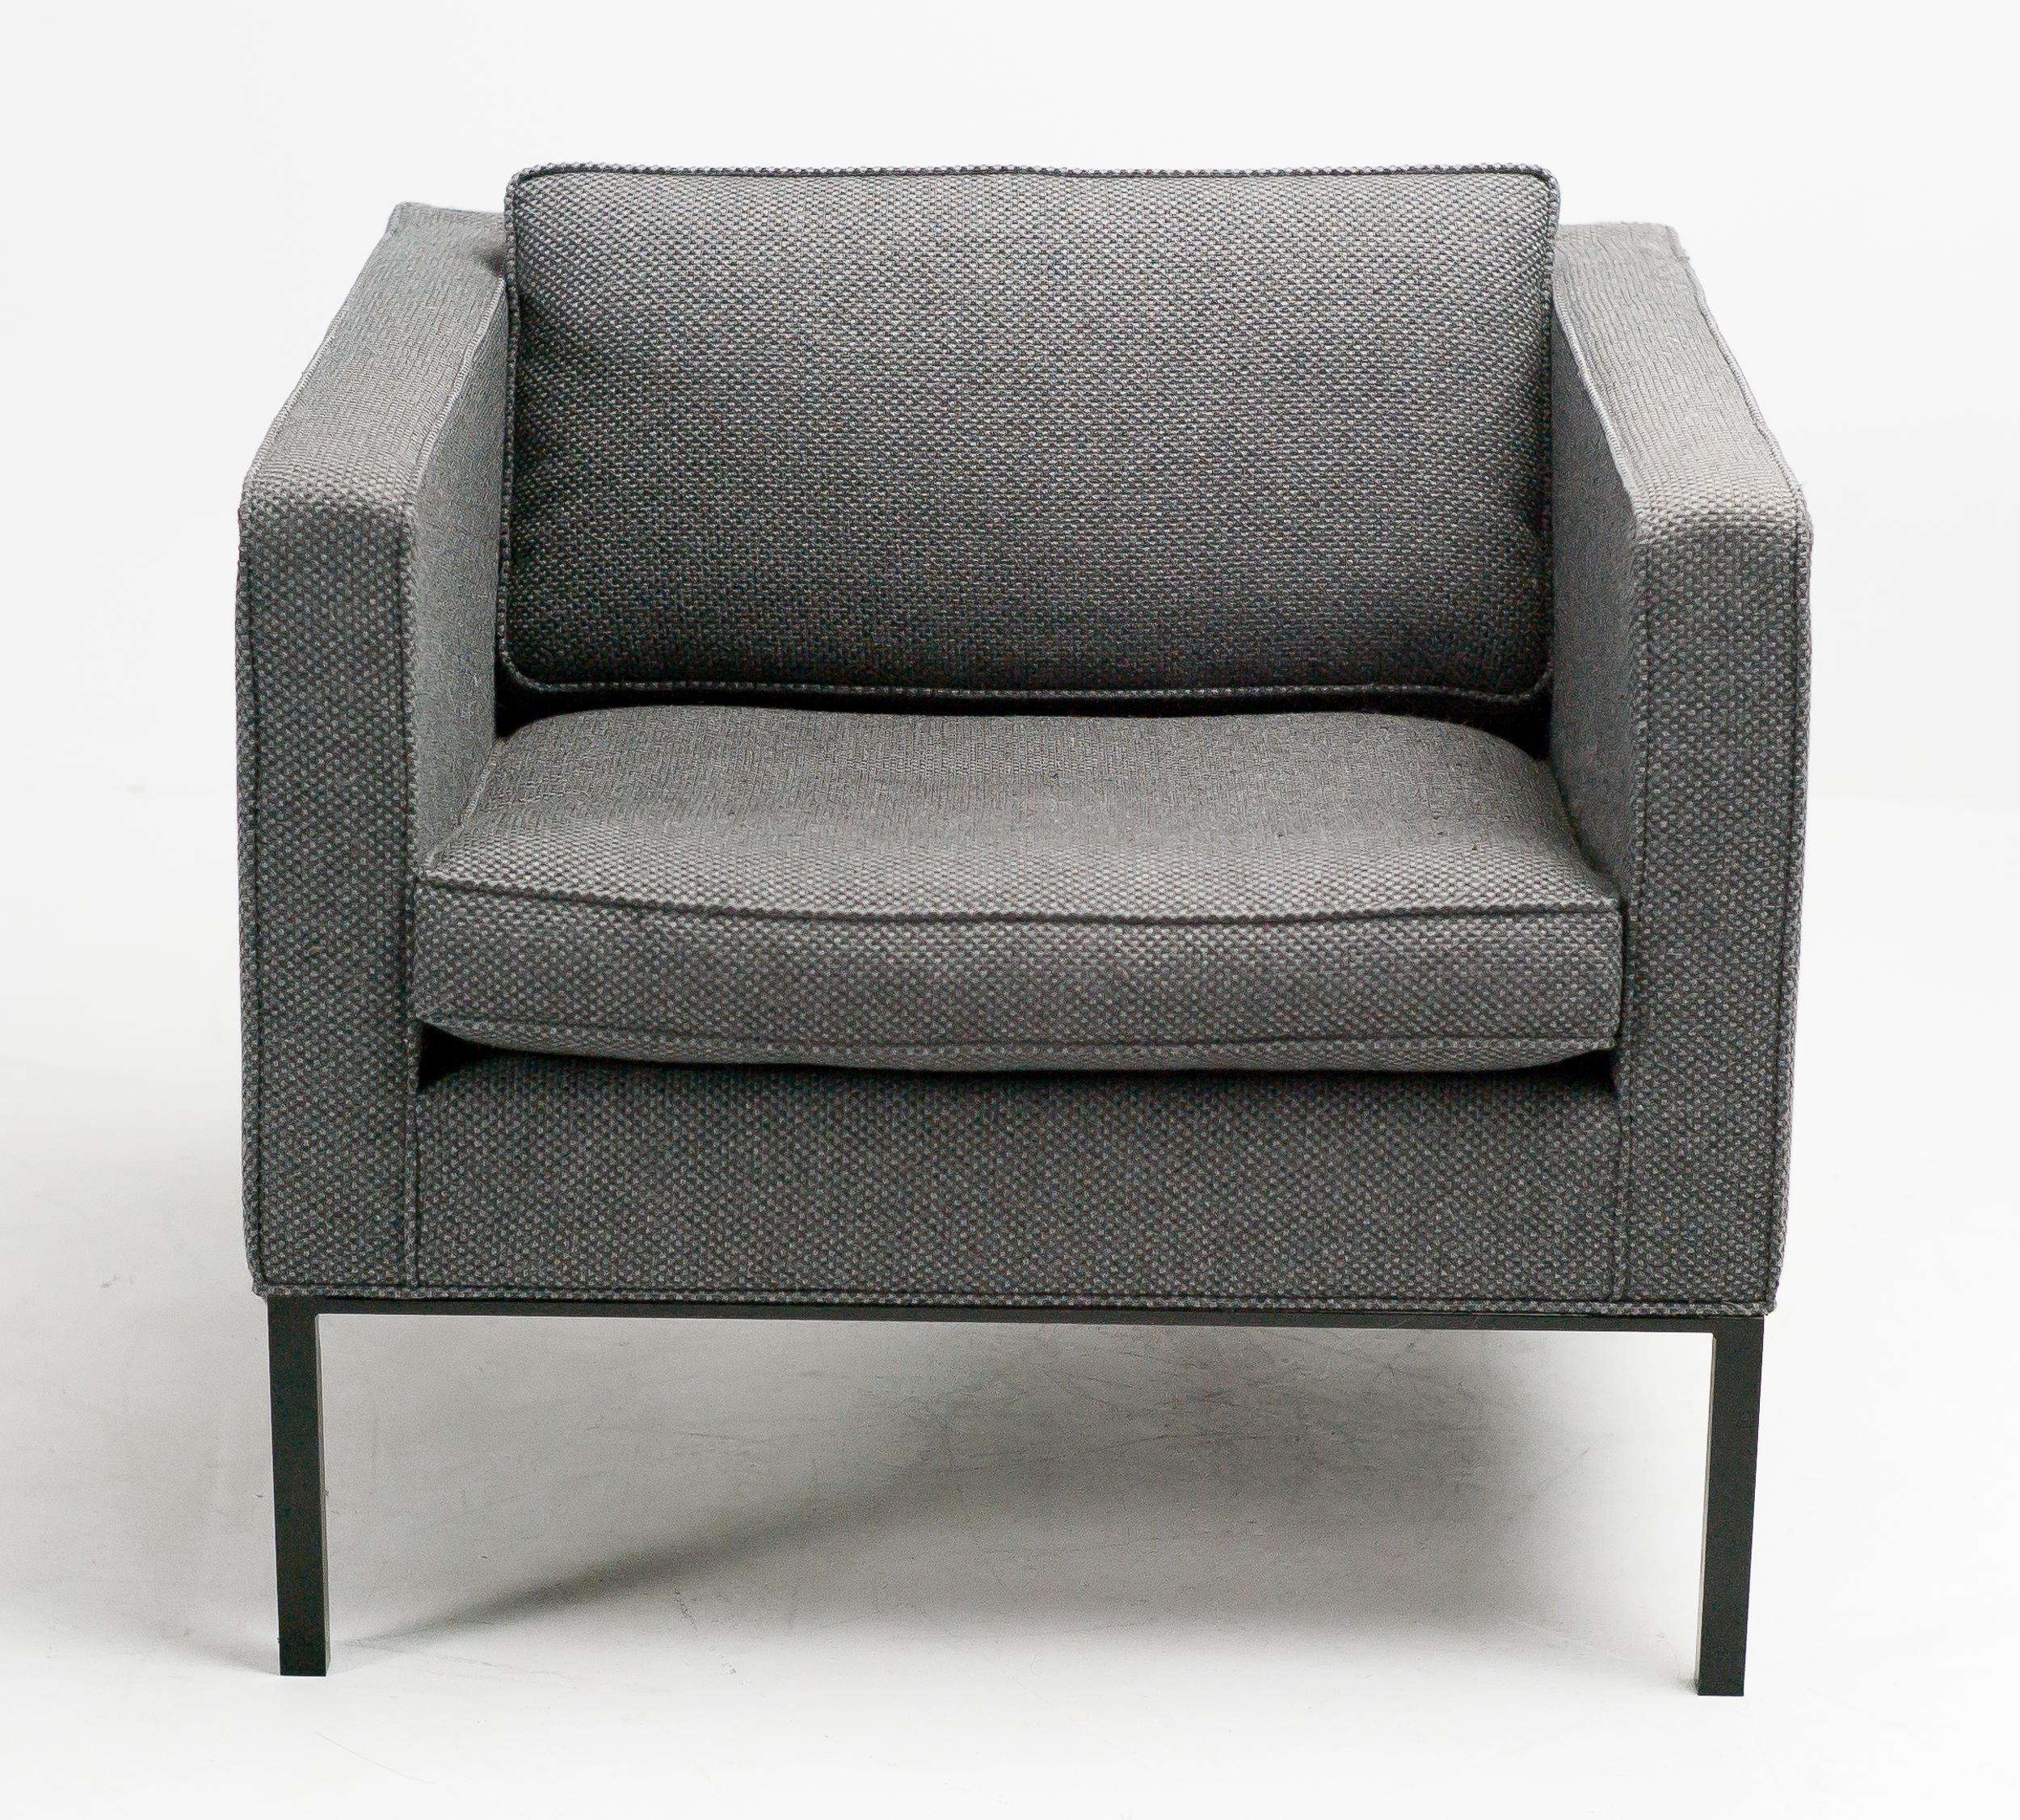 Chaise longue Artifort 905 par l'équipe de design Artifort dirigée par Kho Liane, 1964.
Tapissé d'un tissu de laine bicolore gris foncé/noir De Ploeg.
Cette chaise a été utilisée dans la salle du conseil d'administration d'une banque.
Marqué en